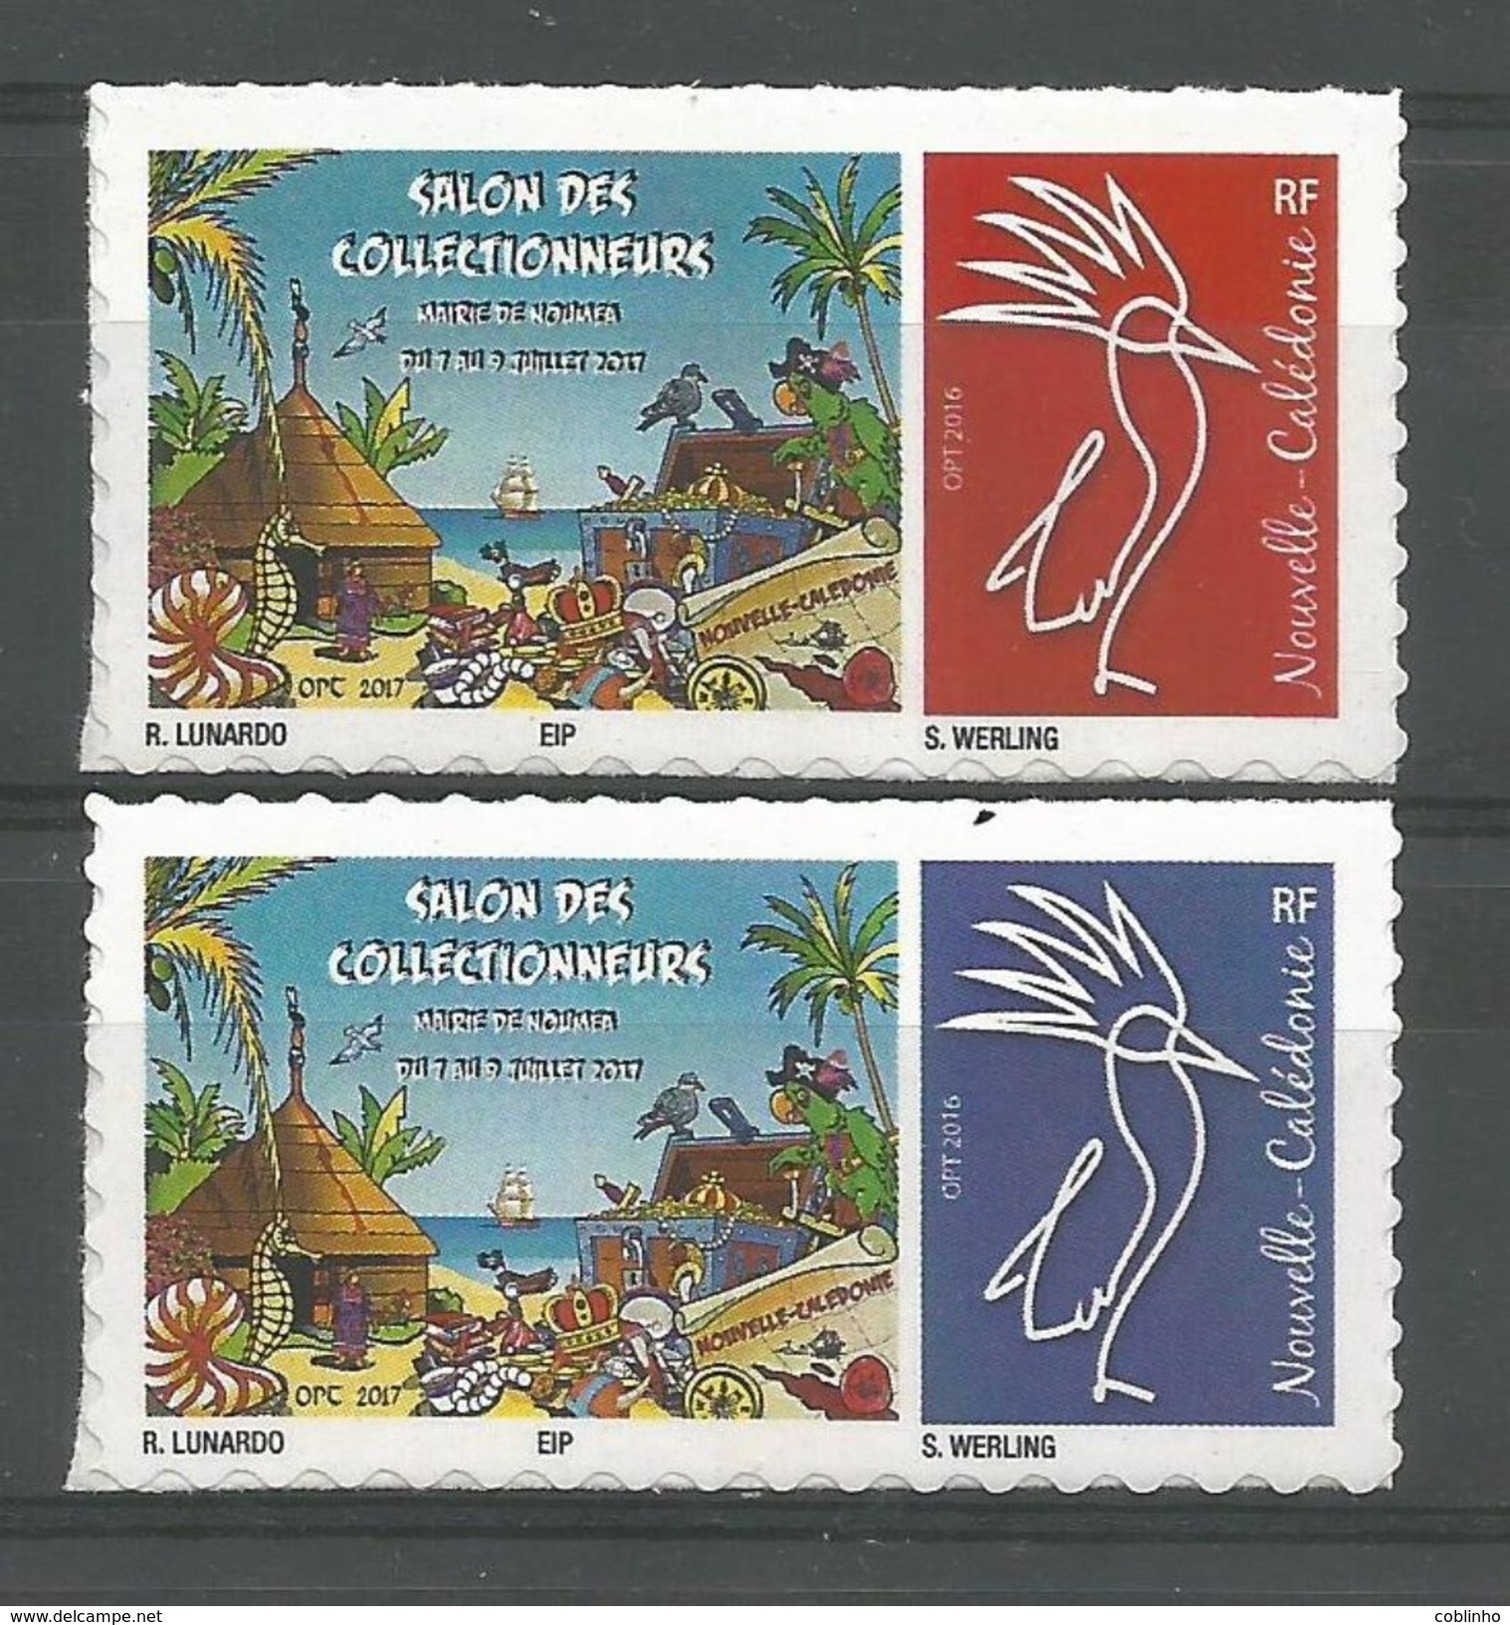 NOUVELLE CALEDONIE (New Caledonia)- Timbre Personnalisé - OPT - 2017 - Salon Collectionneurs Nouméa - Unused Stamps